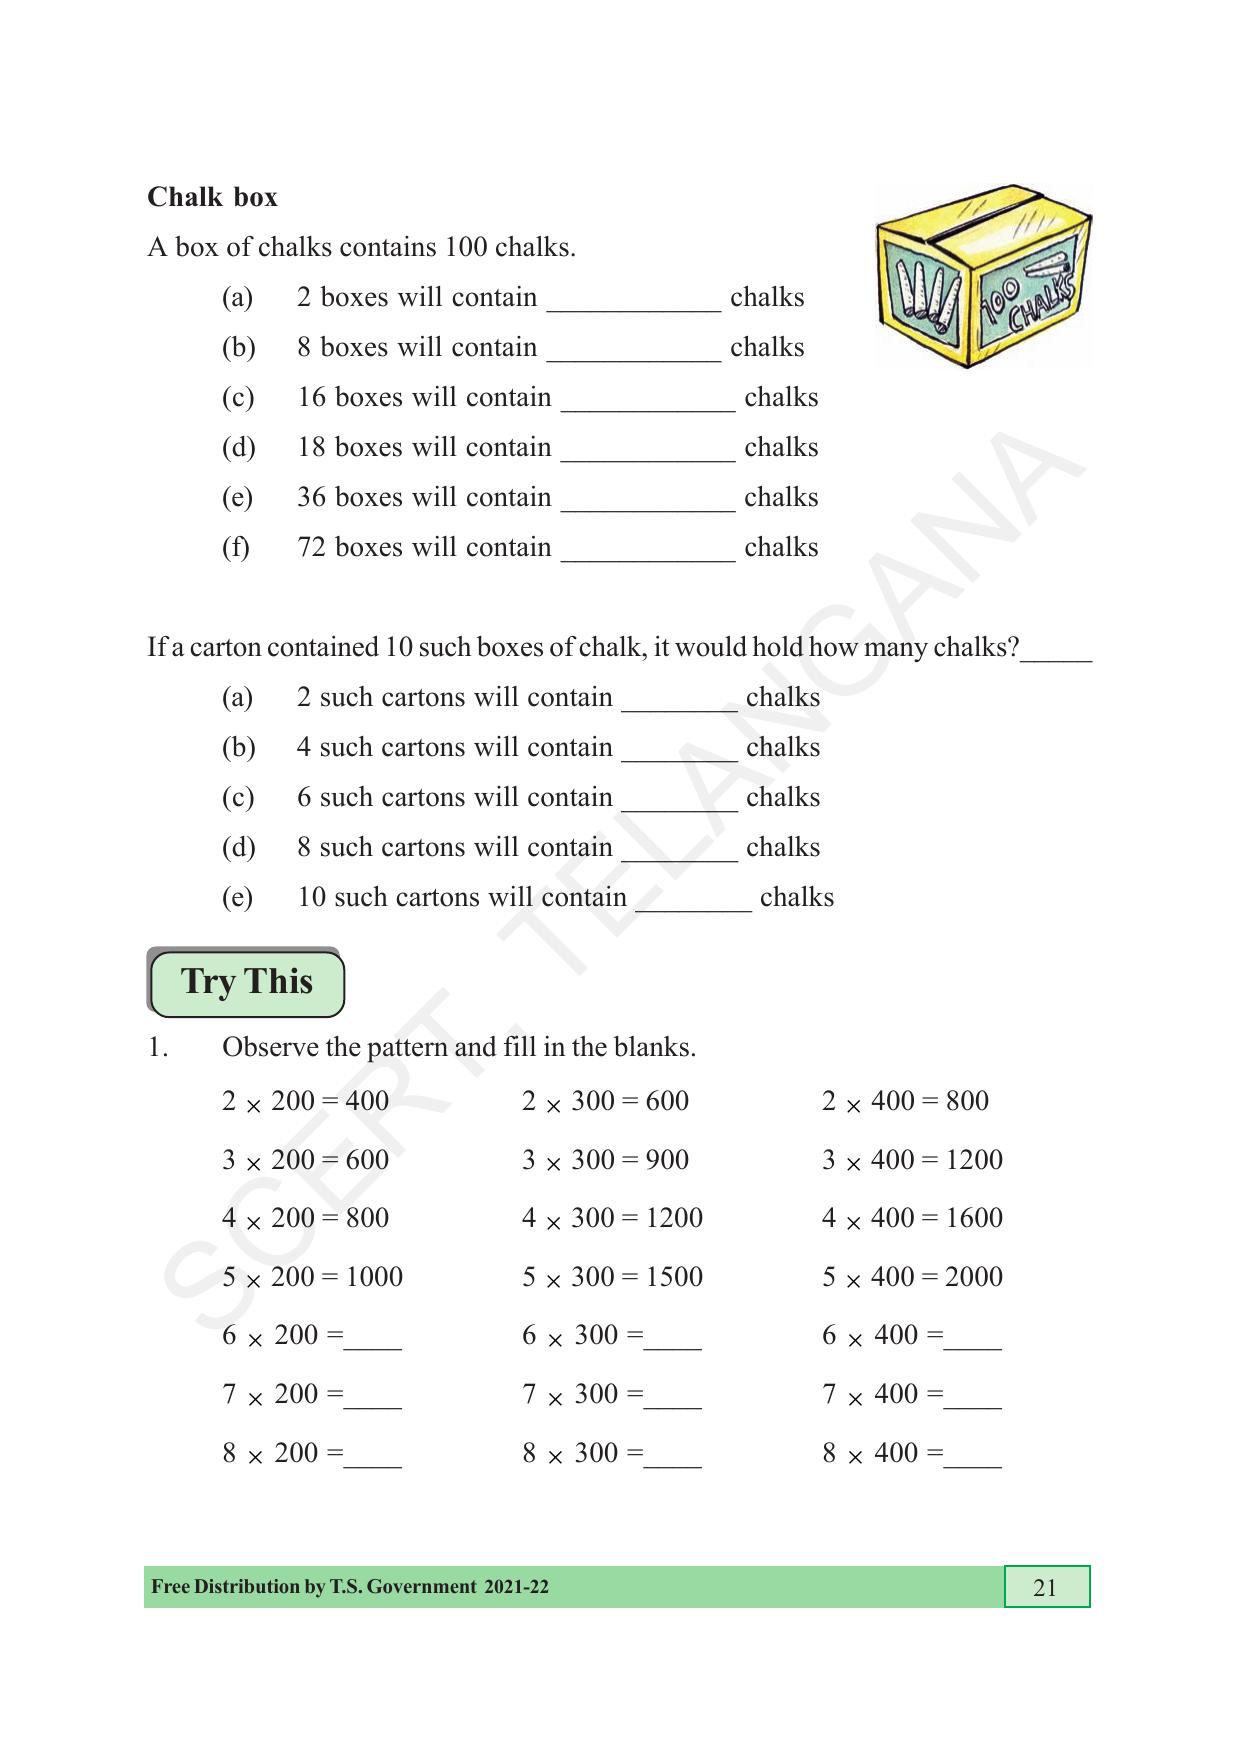 TS SCERT Class 5 Maths (English Medium) Text Book - Page 29